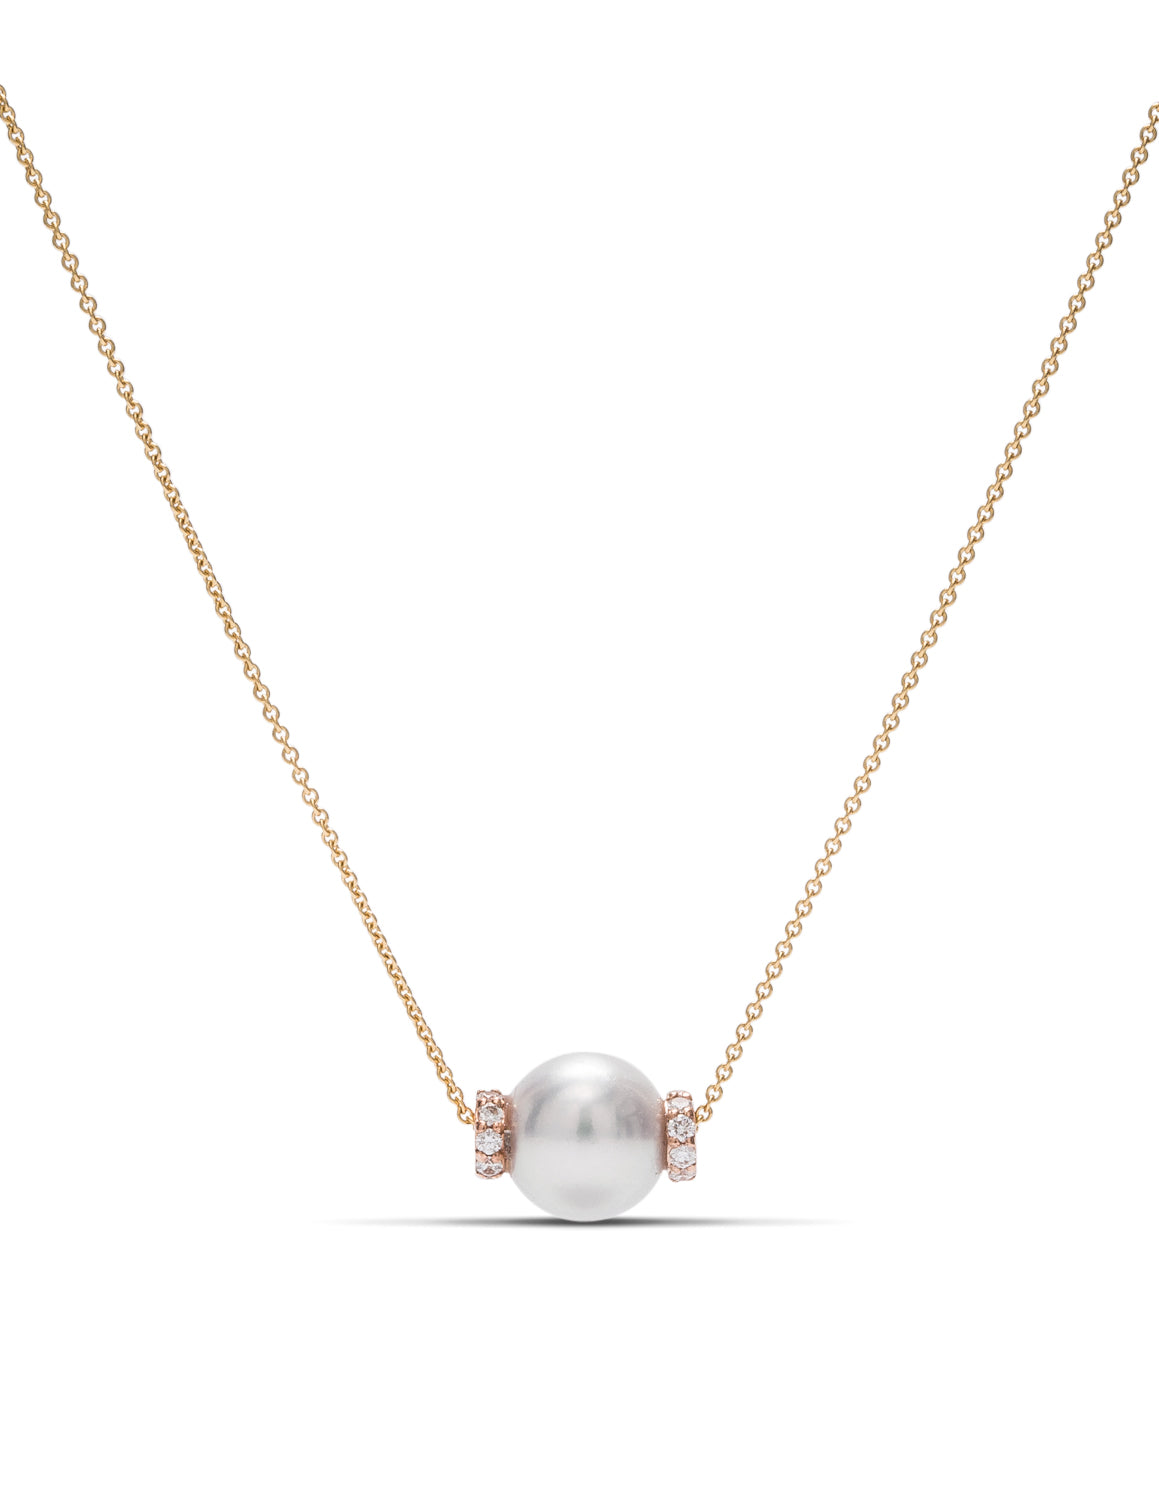 Pearl and Diamond Pendant - Charles Koll Jewellers